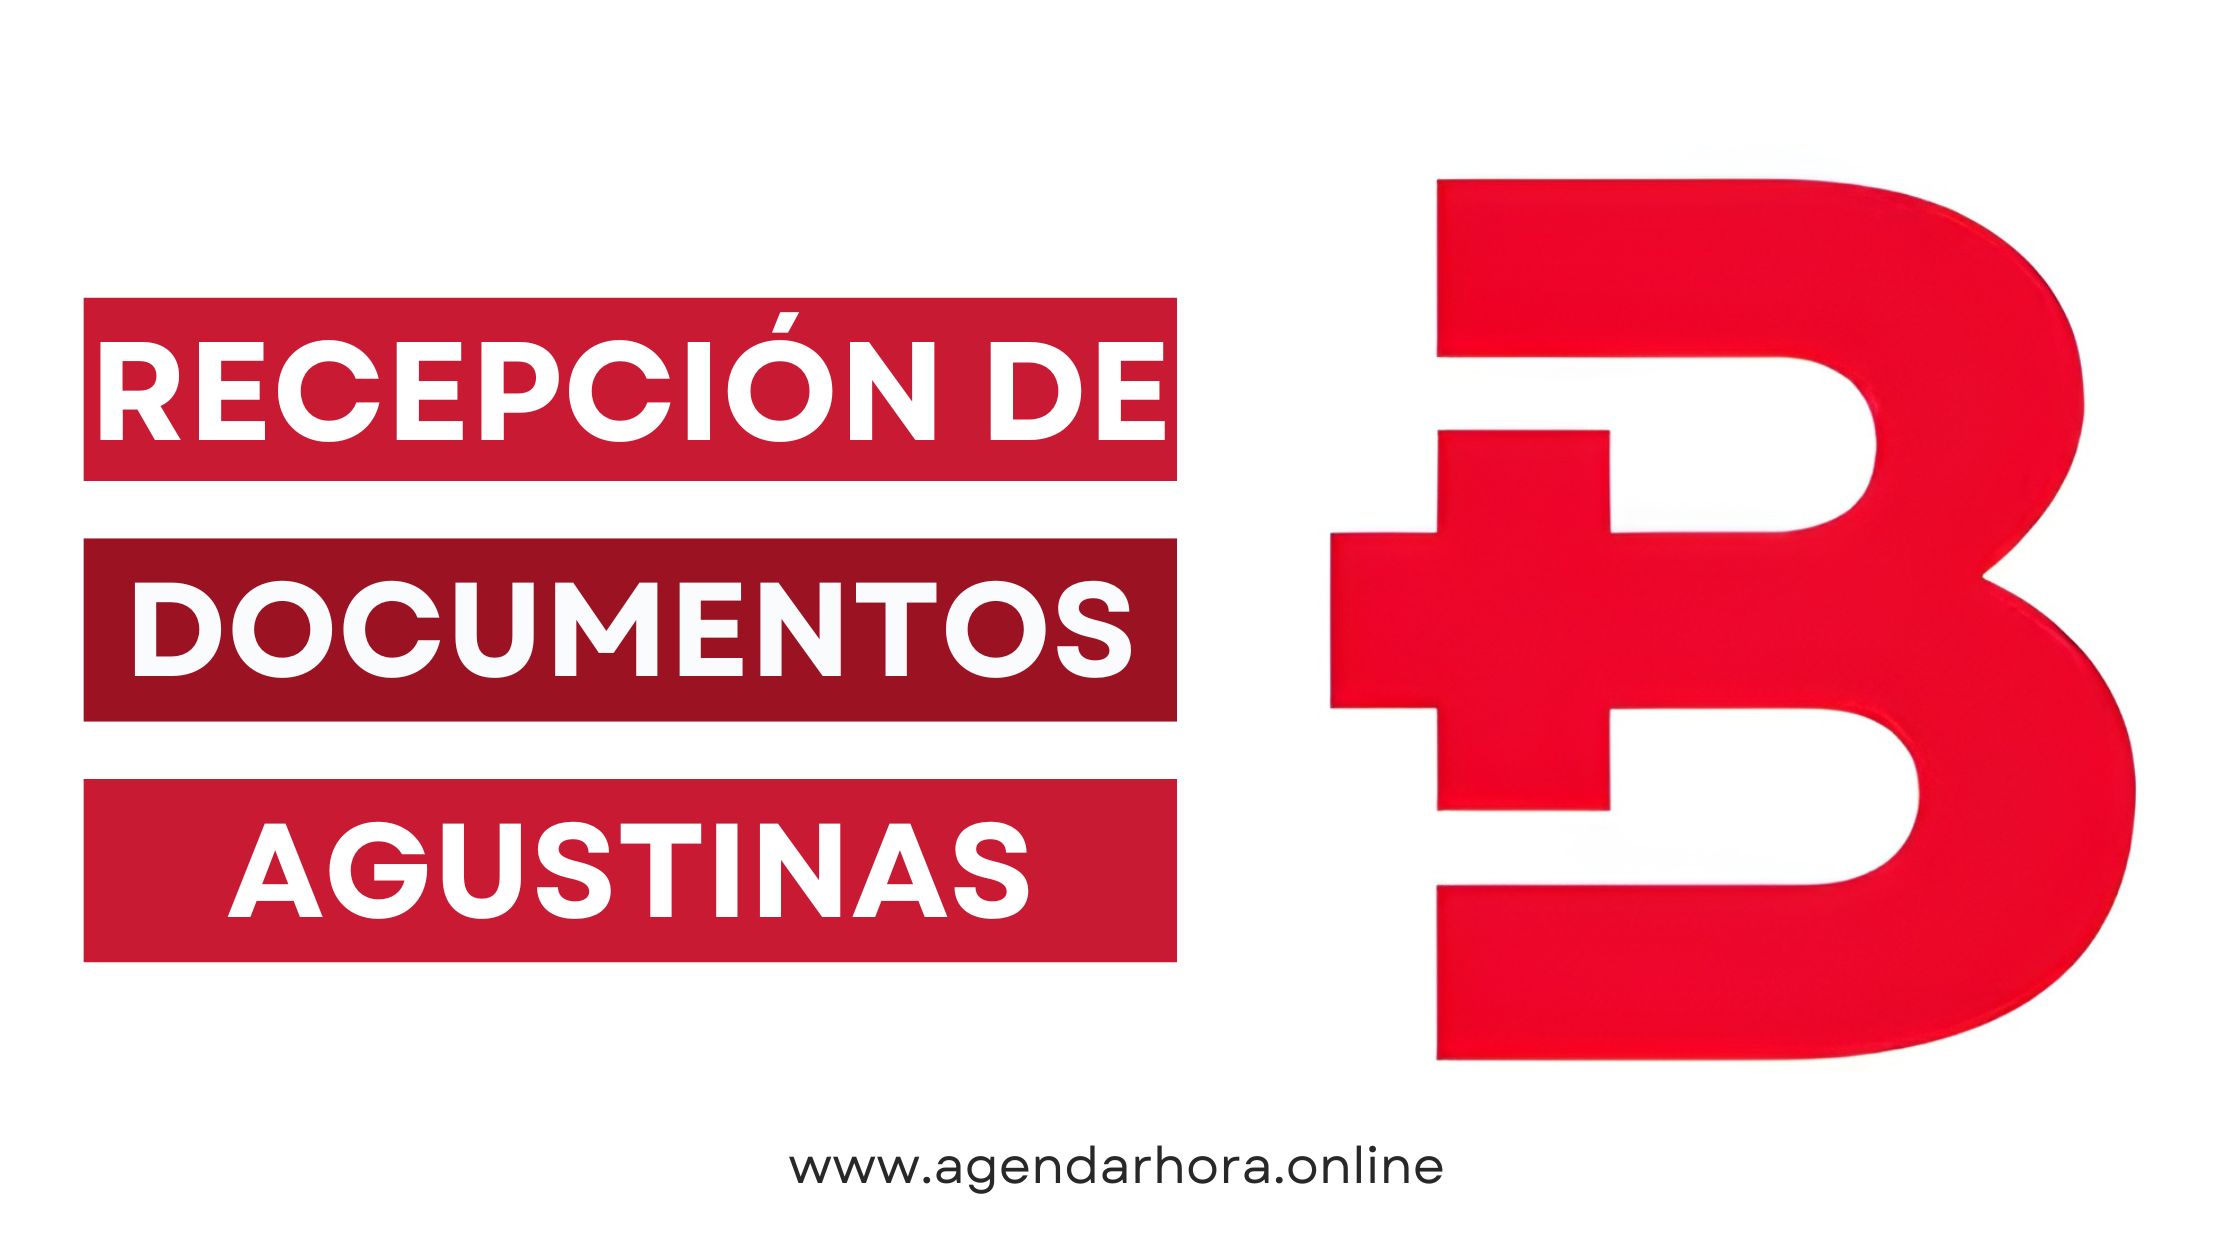 Recepción de documentos Agustinas